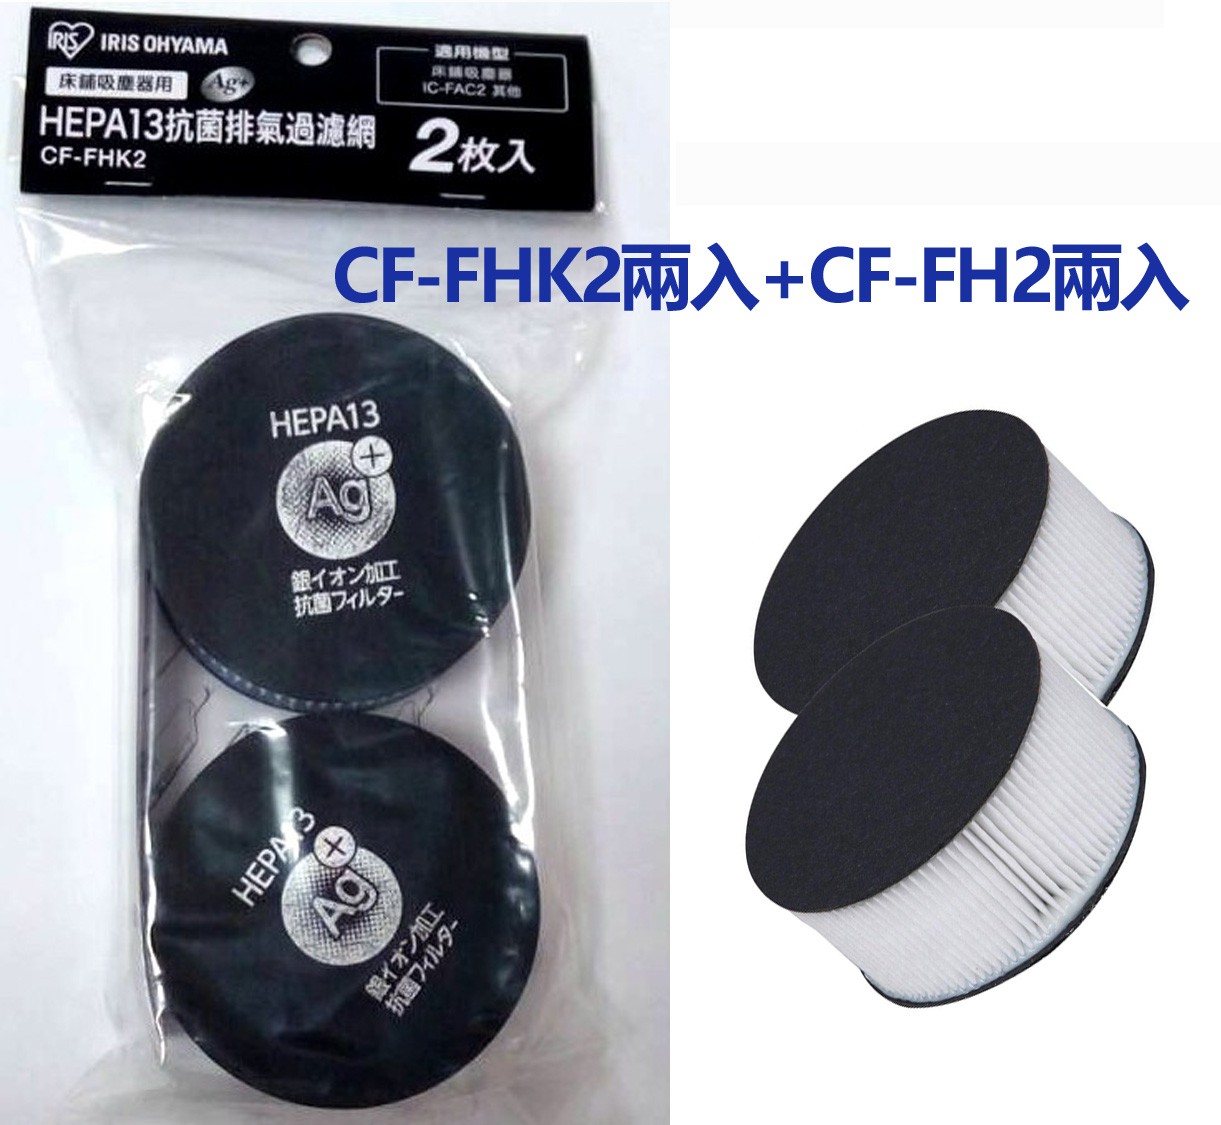 日本IRIS IC-FAC2專用濾網買二送二超值組-銀離子濾網CF-FHK2兩入+CF-FH2兩入